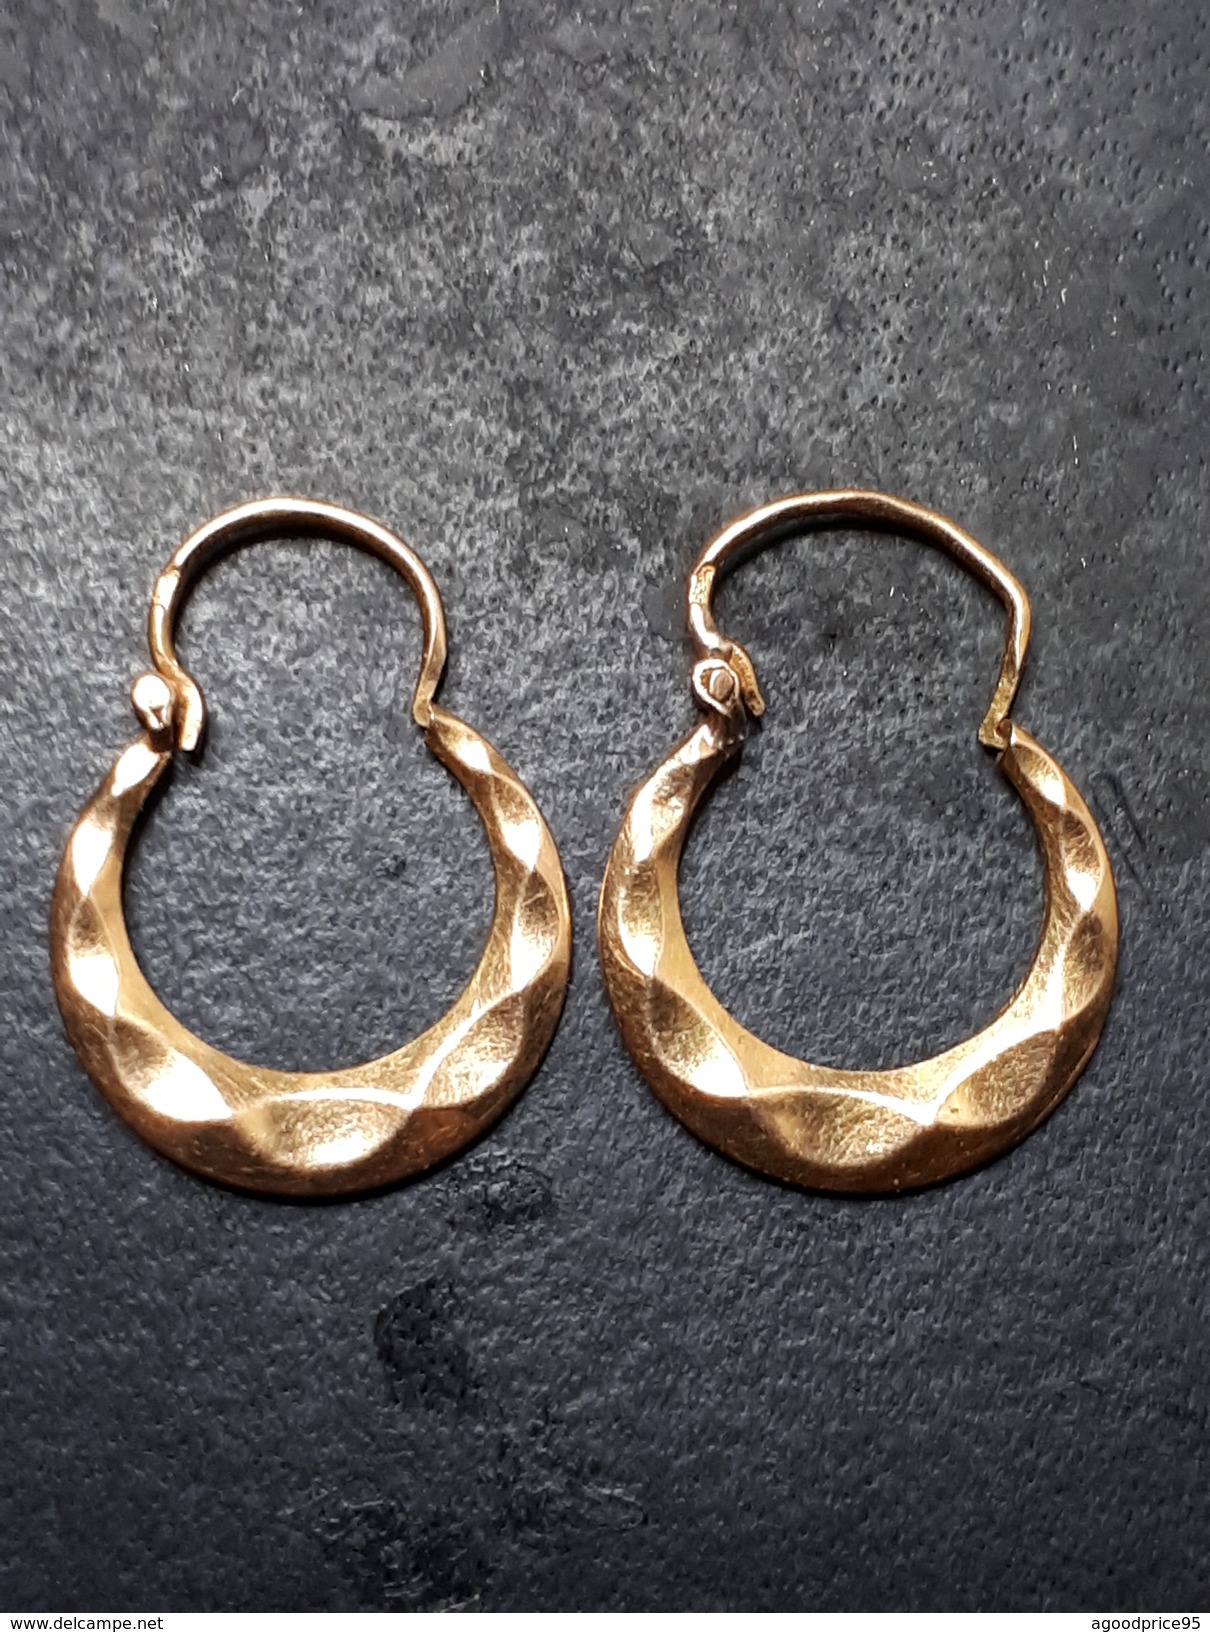 ANCIENNES BOUCLES D' OREILLES CRÉOLE EN OR 18 K - Earrings